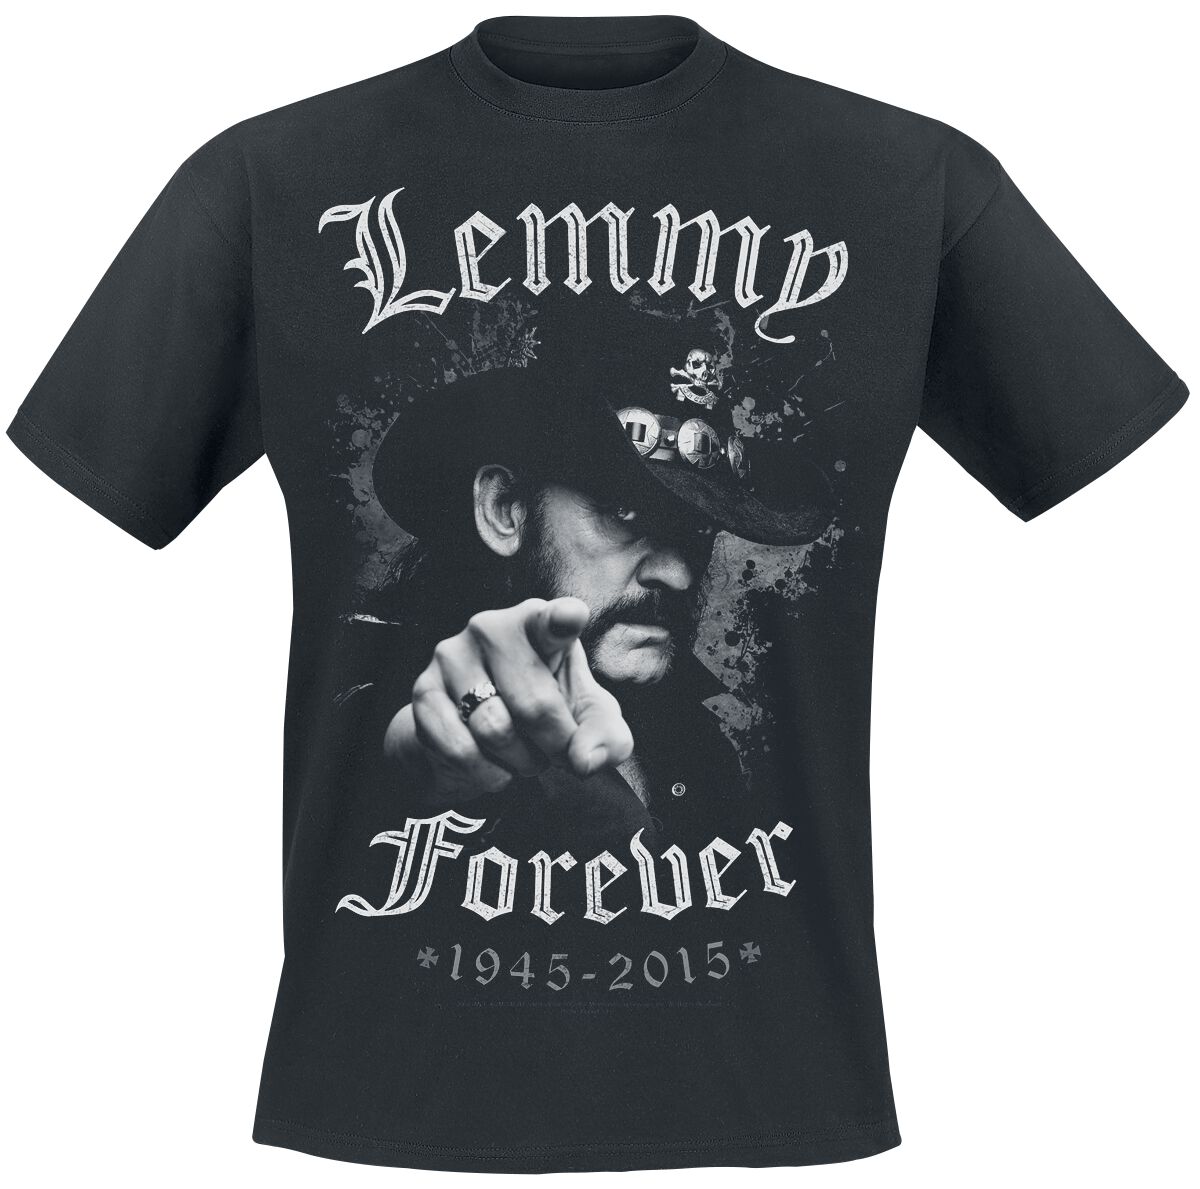 Motörhead T-Shirt - Lemmy - Forever - M bis 5XL - für Männer - Größe L - schwarz  - EMP exklusives Merchandise!